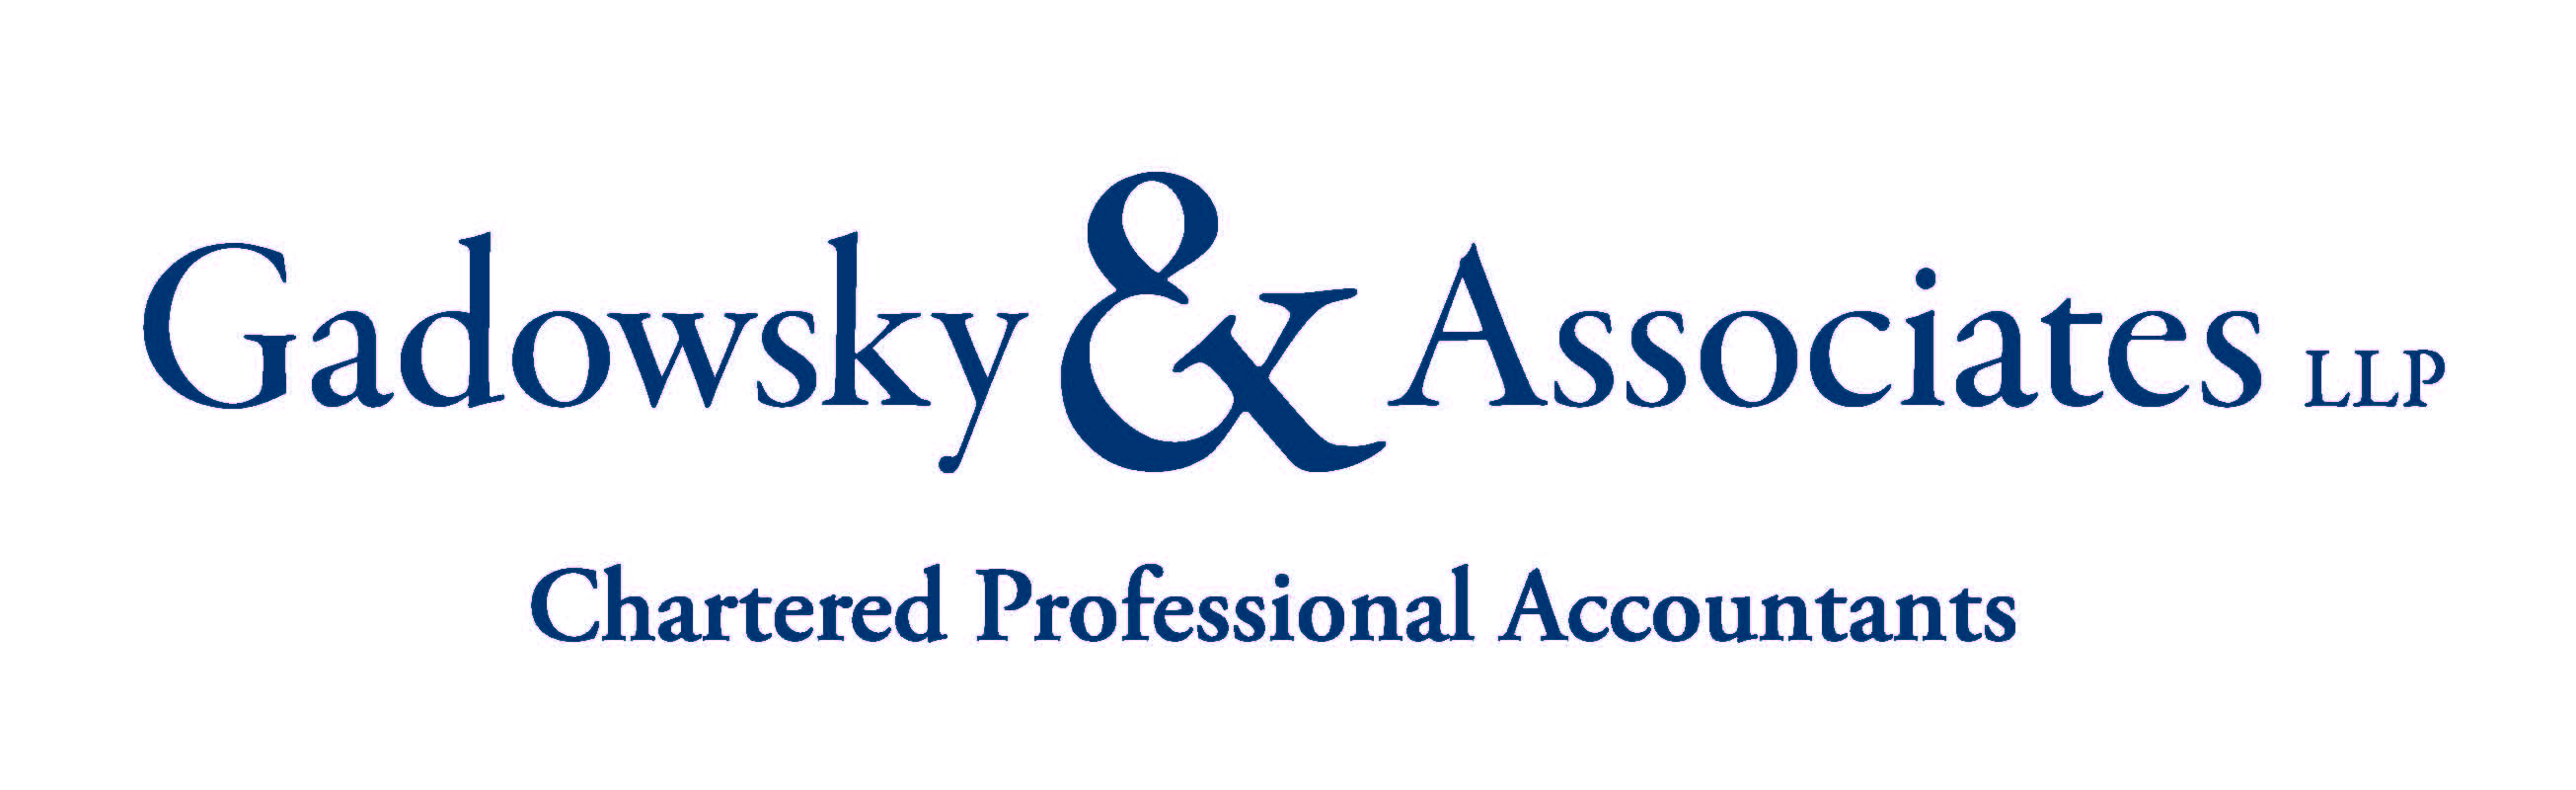 Gadowsky & Associates LLP